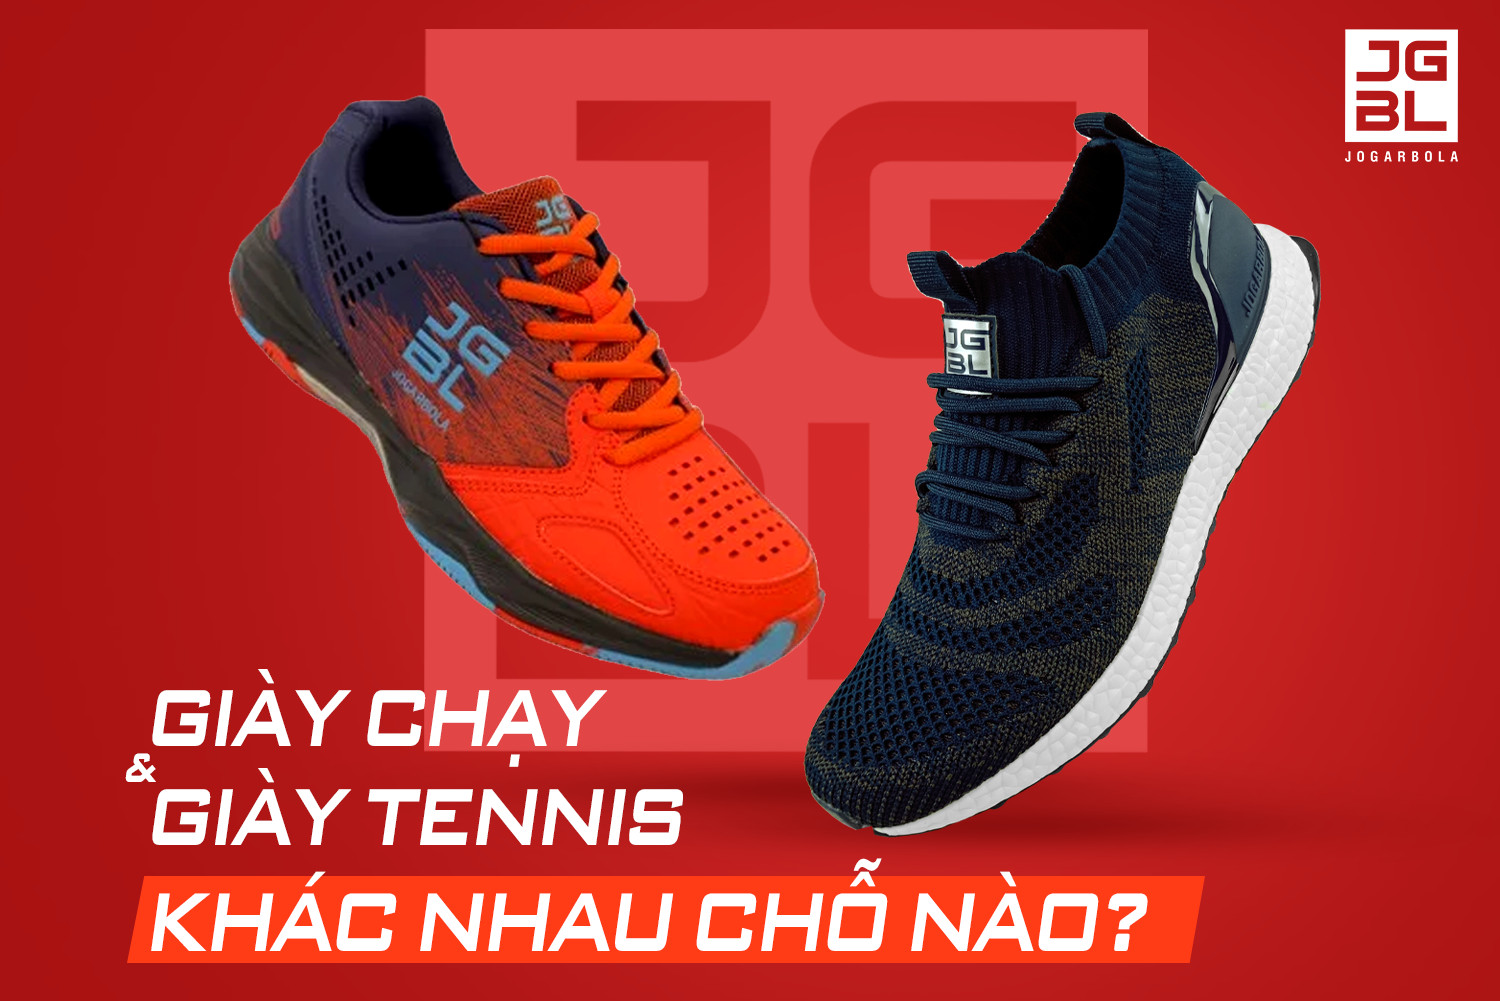 Giày chạy thể thao và giày tennis khác nhau chỗ nào?